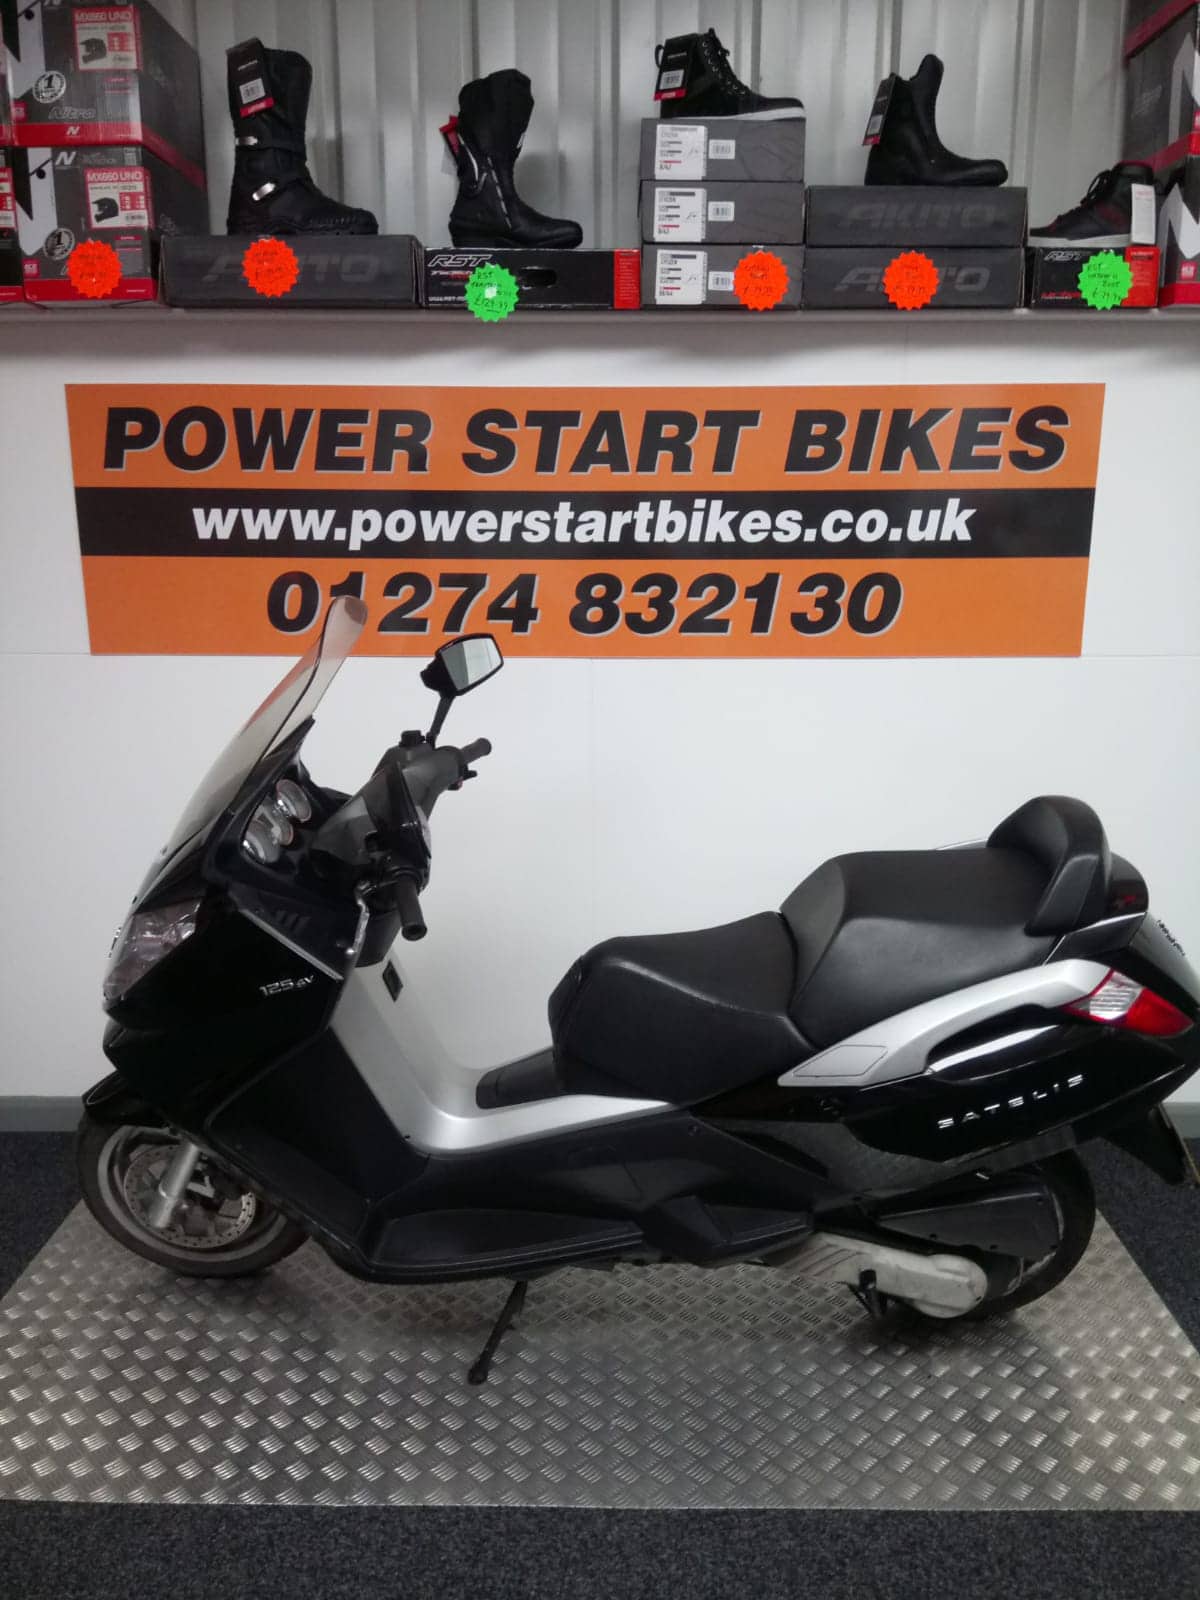 Power Start Bikes - Bradford, UK, electric motorcycle